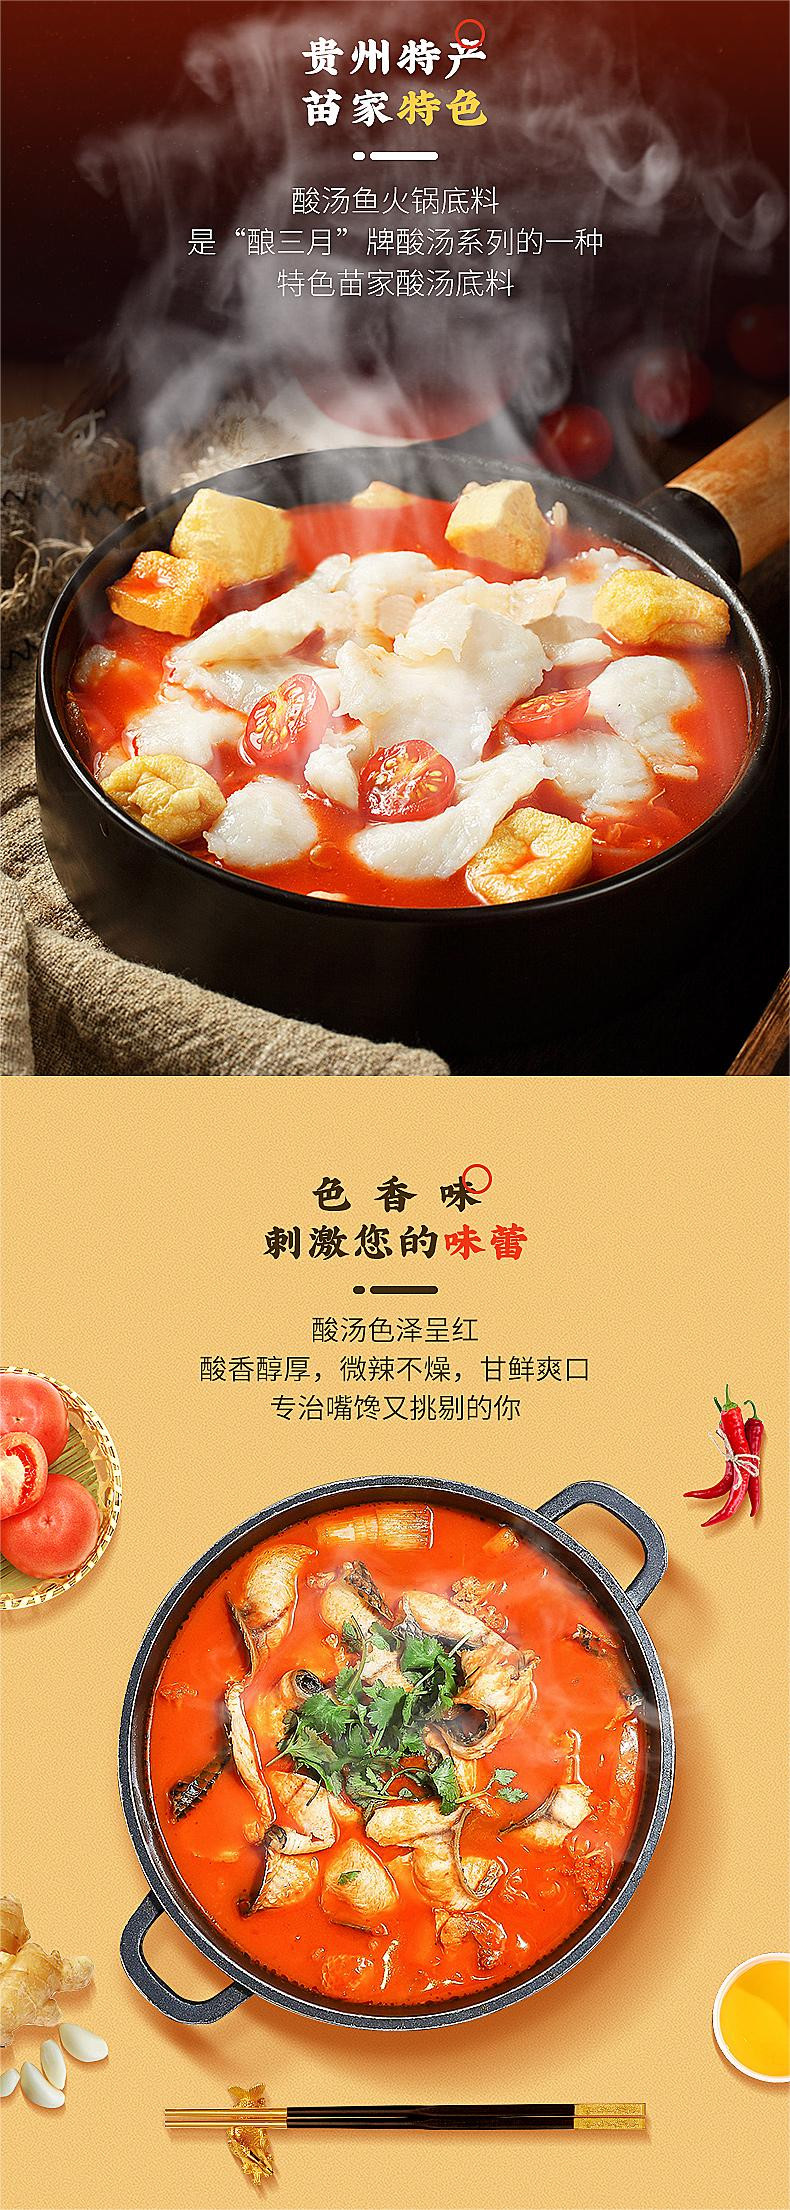 酿三月 丹寨、凯里酸汤火锅底料 五种口味贵州特产地道小白懒人风味